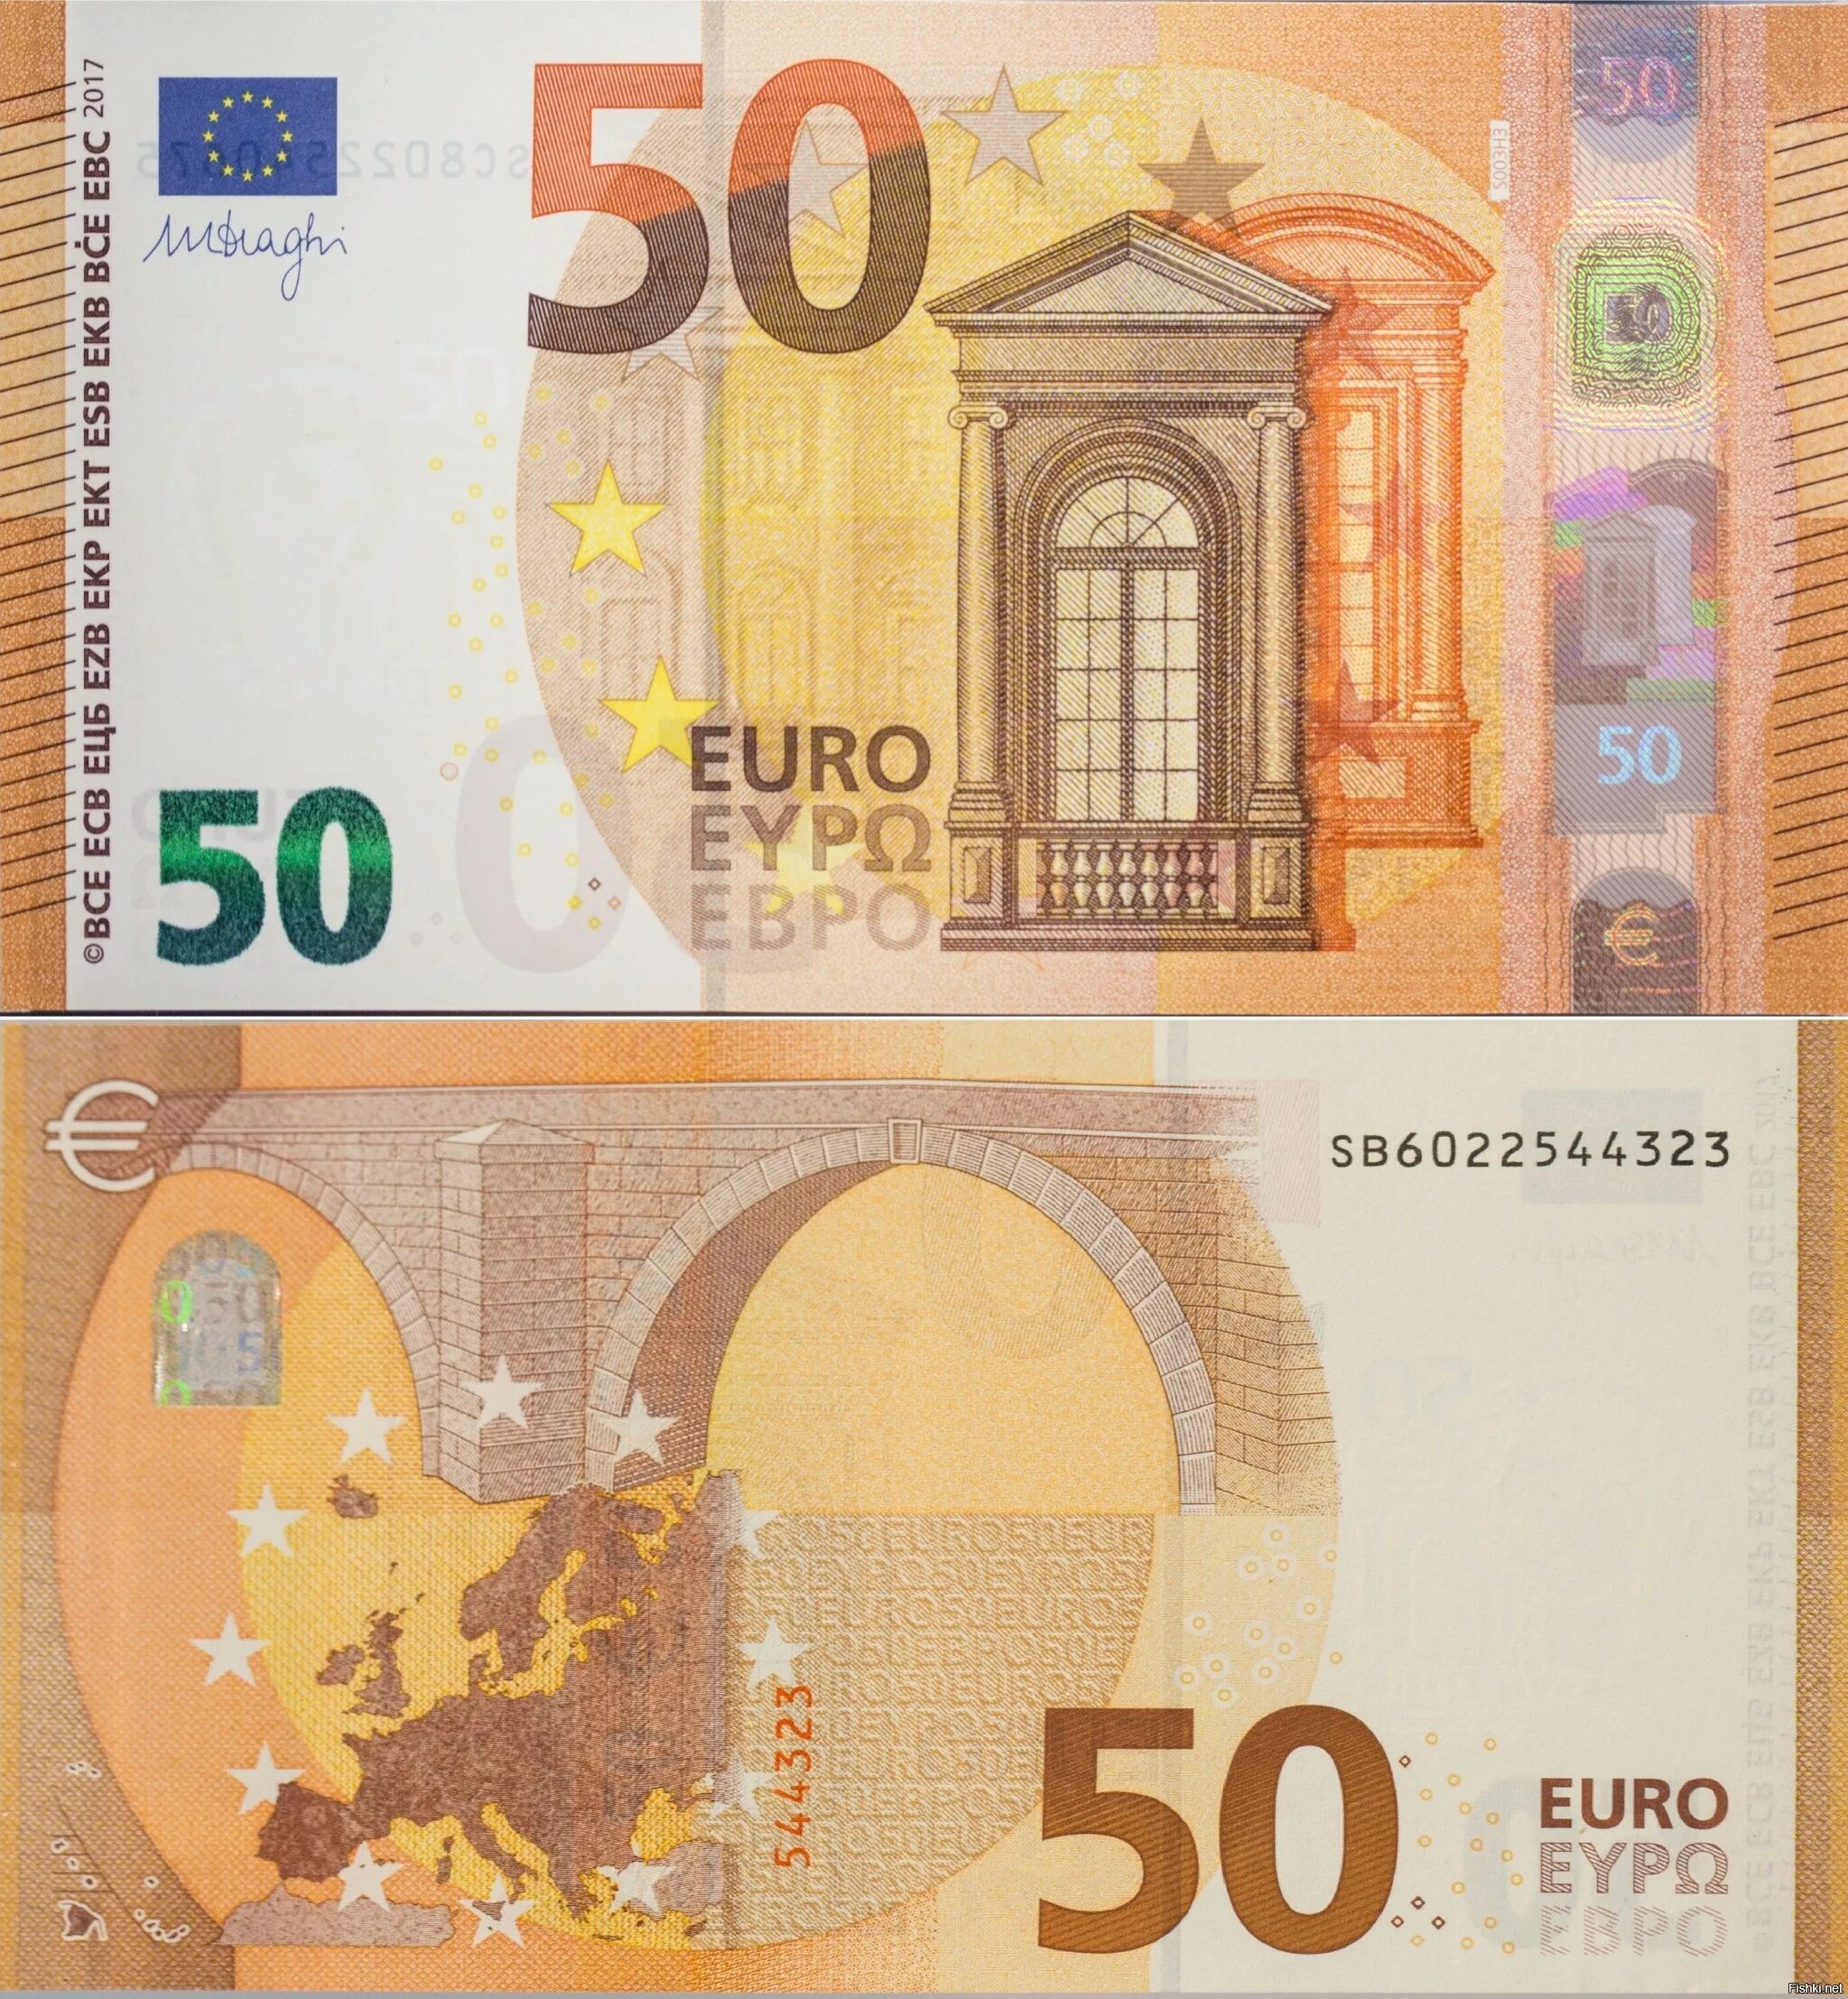 Банкноты 50 евро. Банкноты евро нового образца 50 евро. 50 Евро купюра 2017. Как выглядит банкнота 50 евро. Пятьдесят евро